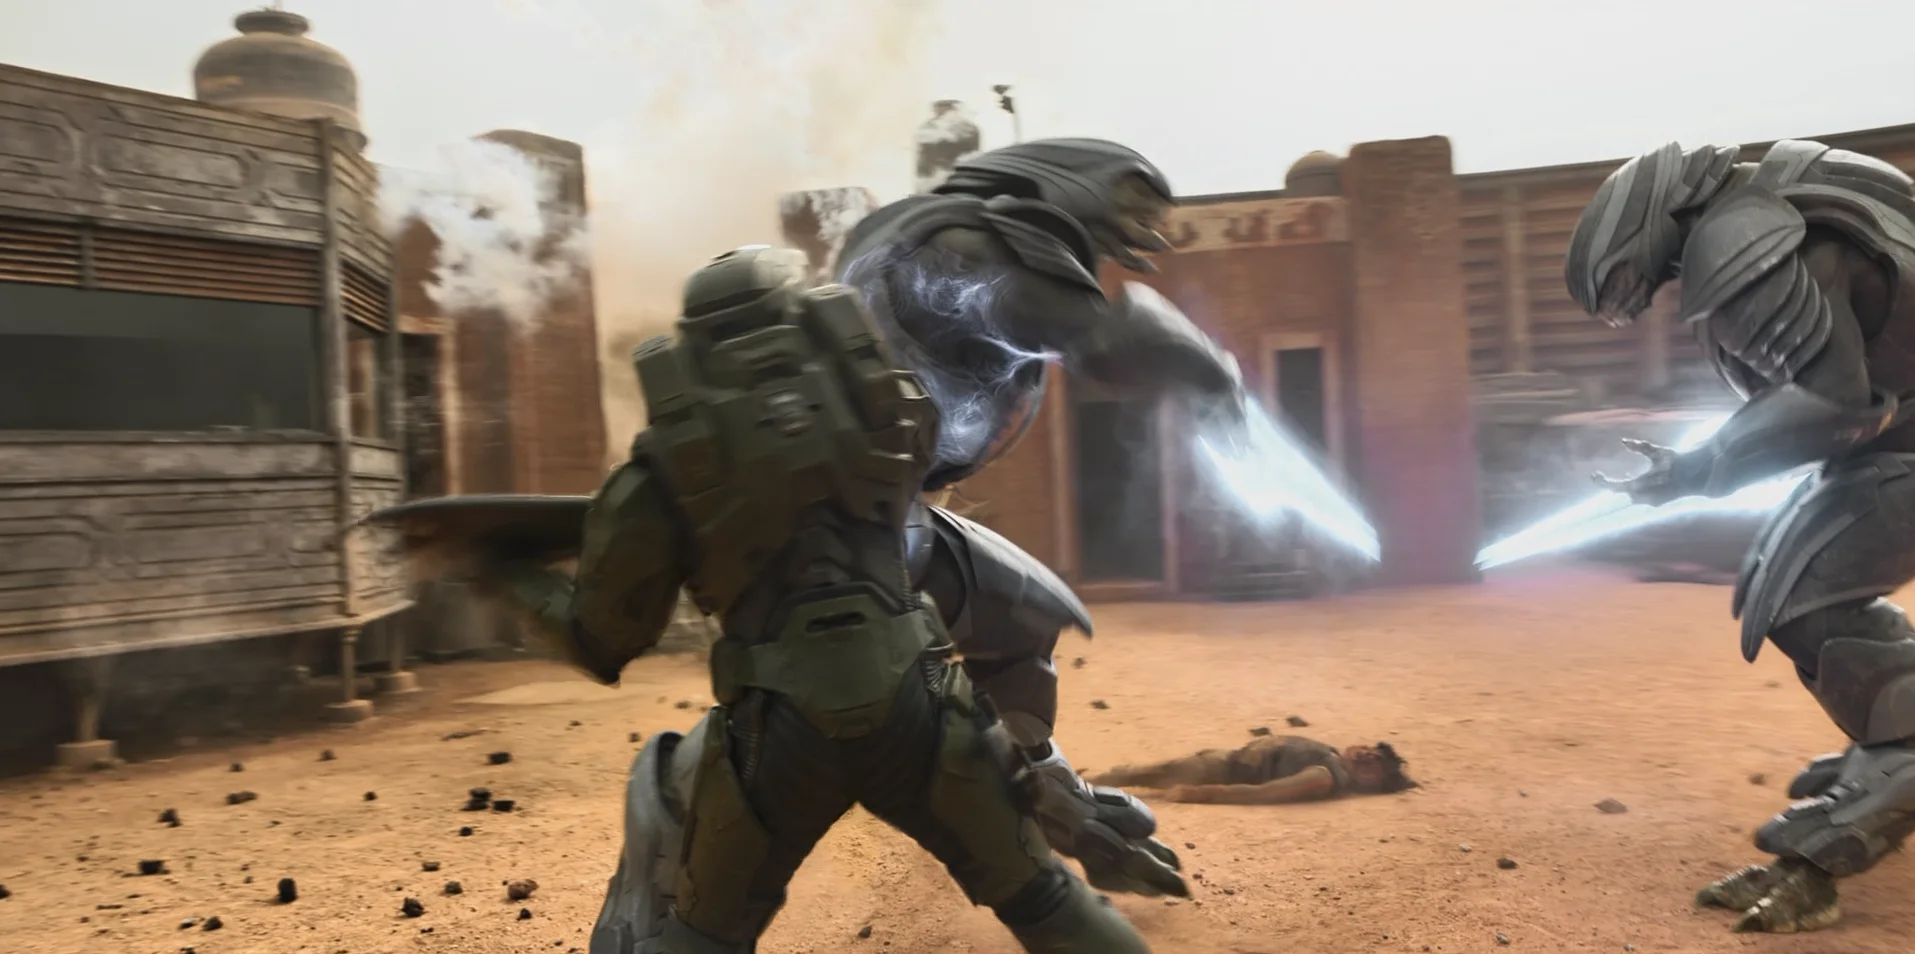 Впечатления от первой серии Halo от Paramount+: хотели «Мандалорца», а получился трэш - фото 2